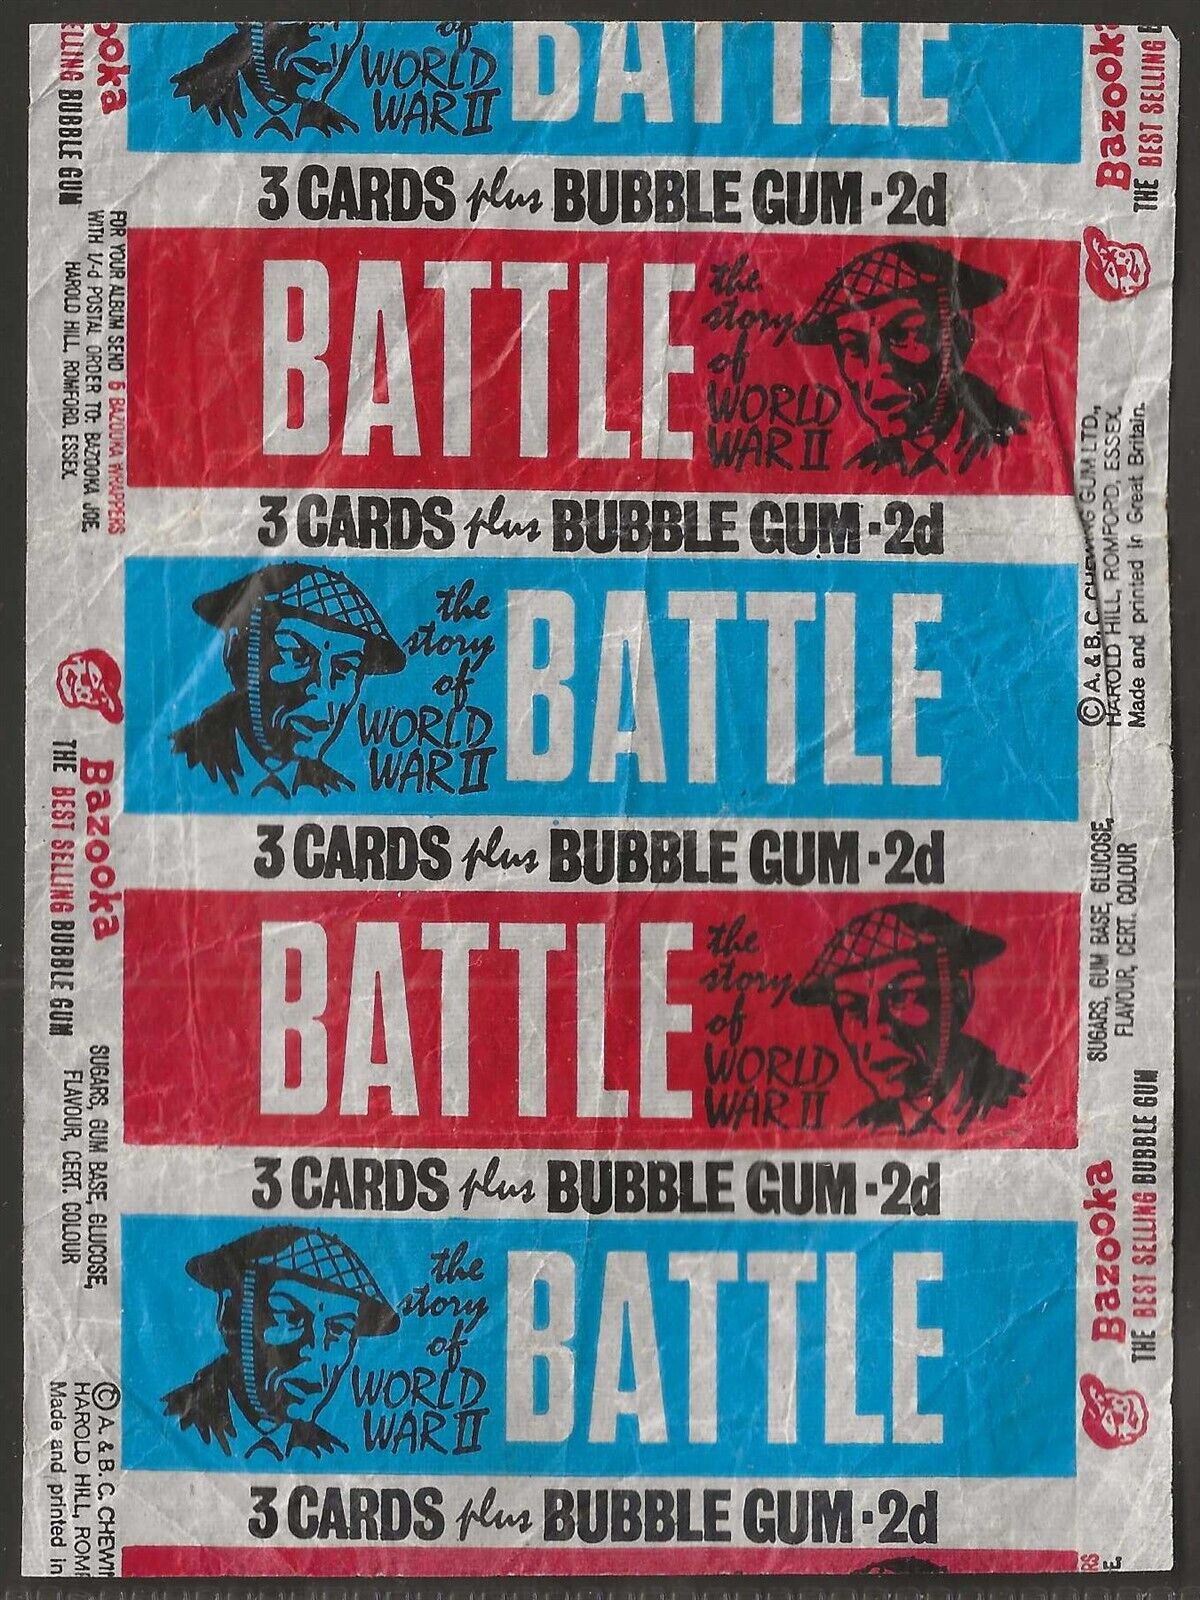 A&BC WRAPPER BATTLE CARDS 1966 (VARIANT 3 CARDS PLUS BUBBLE GUM)